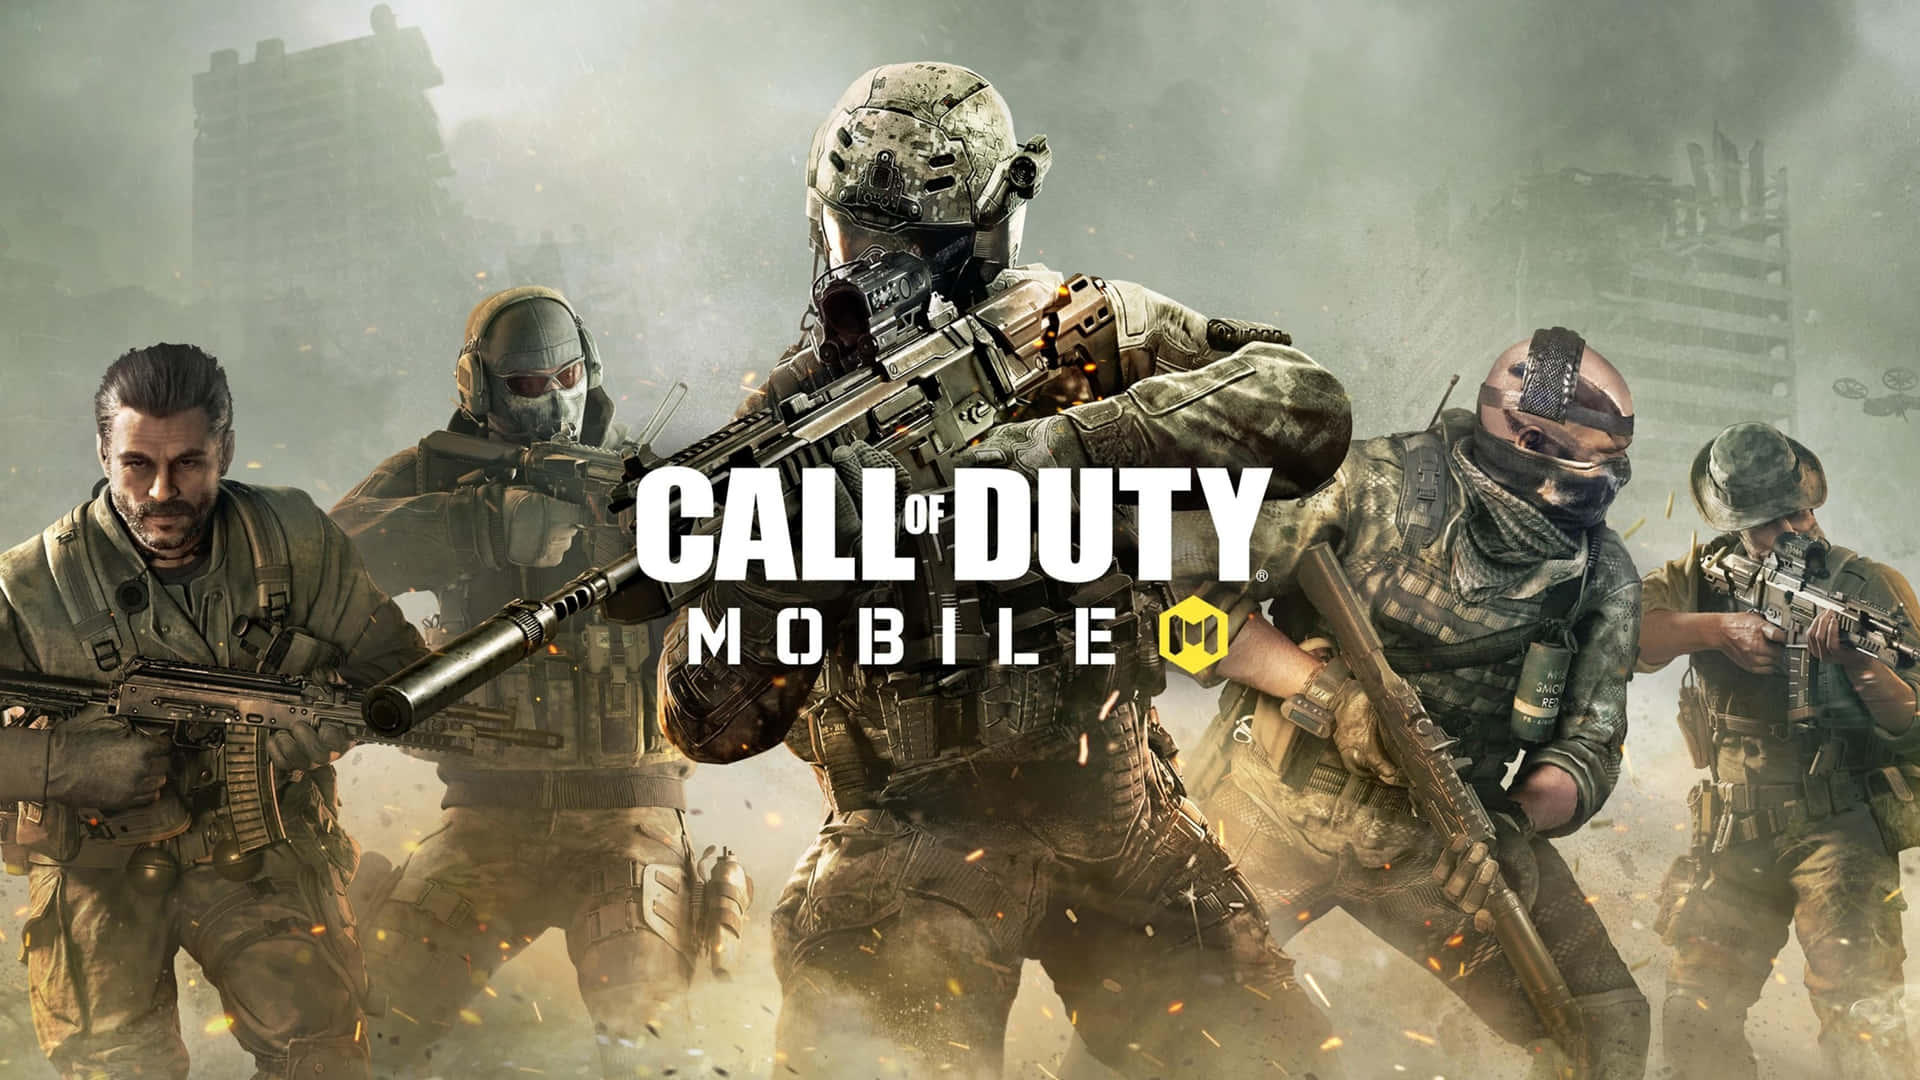 Intensaescena De Acción De Call Of Duty, El Último Juego De Disparos En Primera Persona. Fondo de pantalla